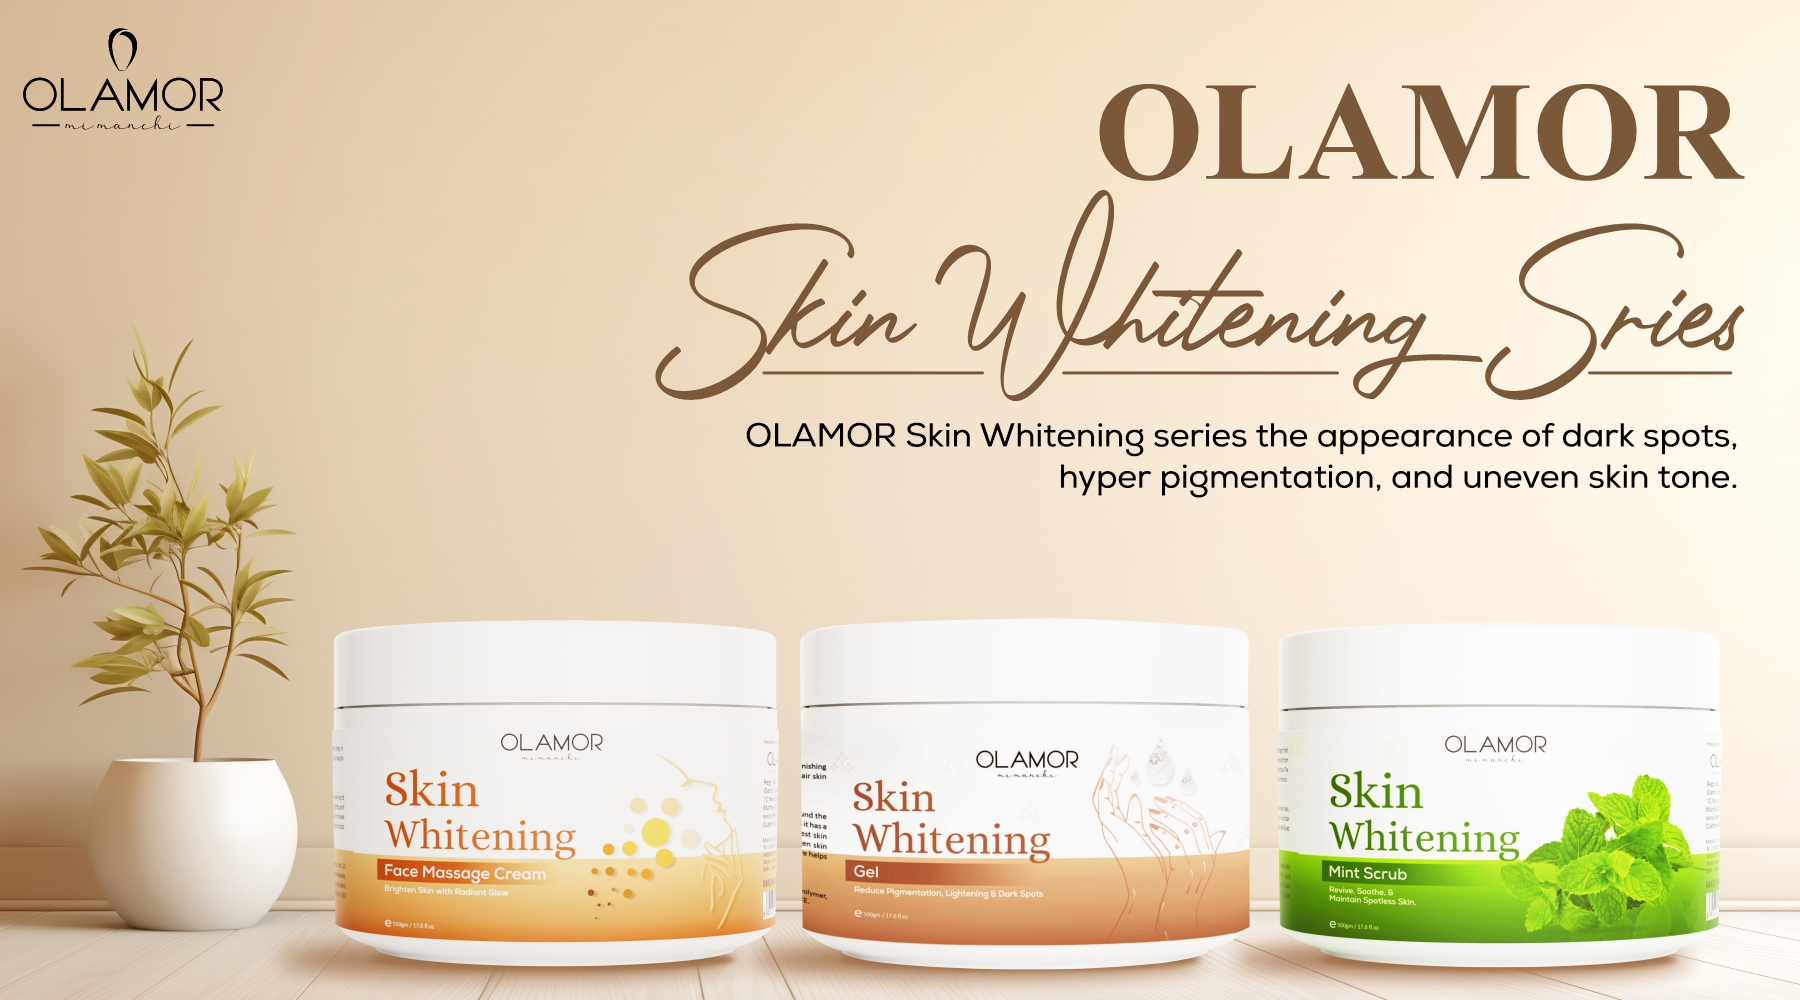 Olamor Skin Whitening Series